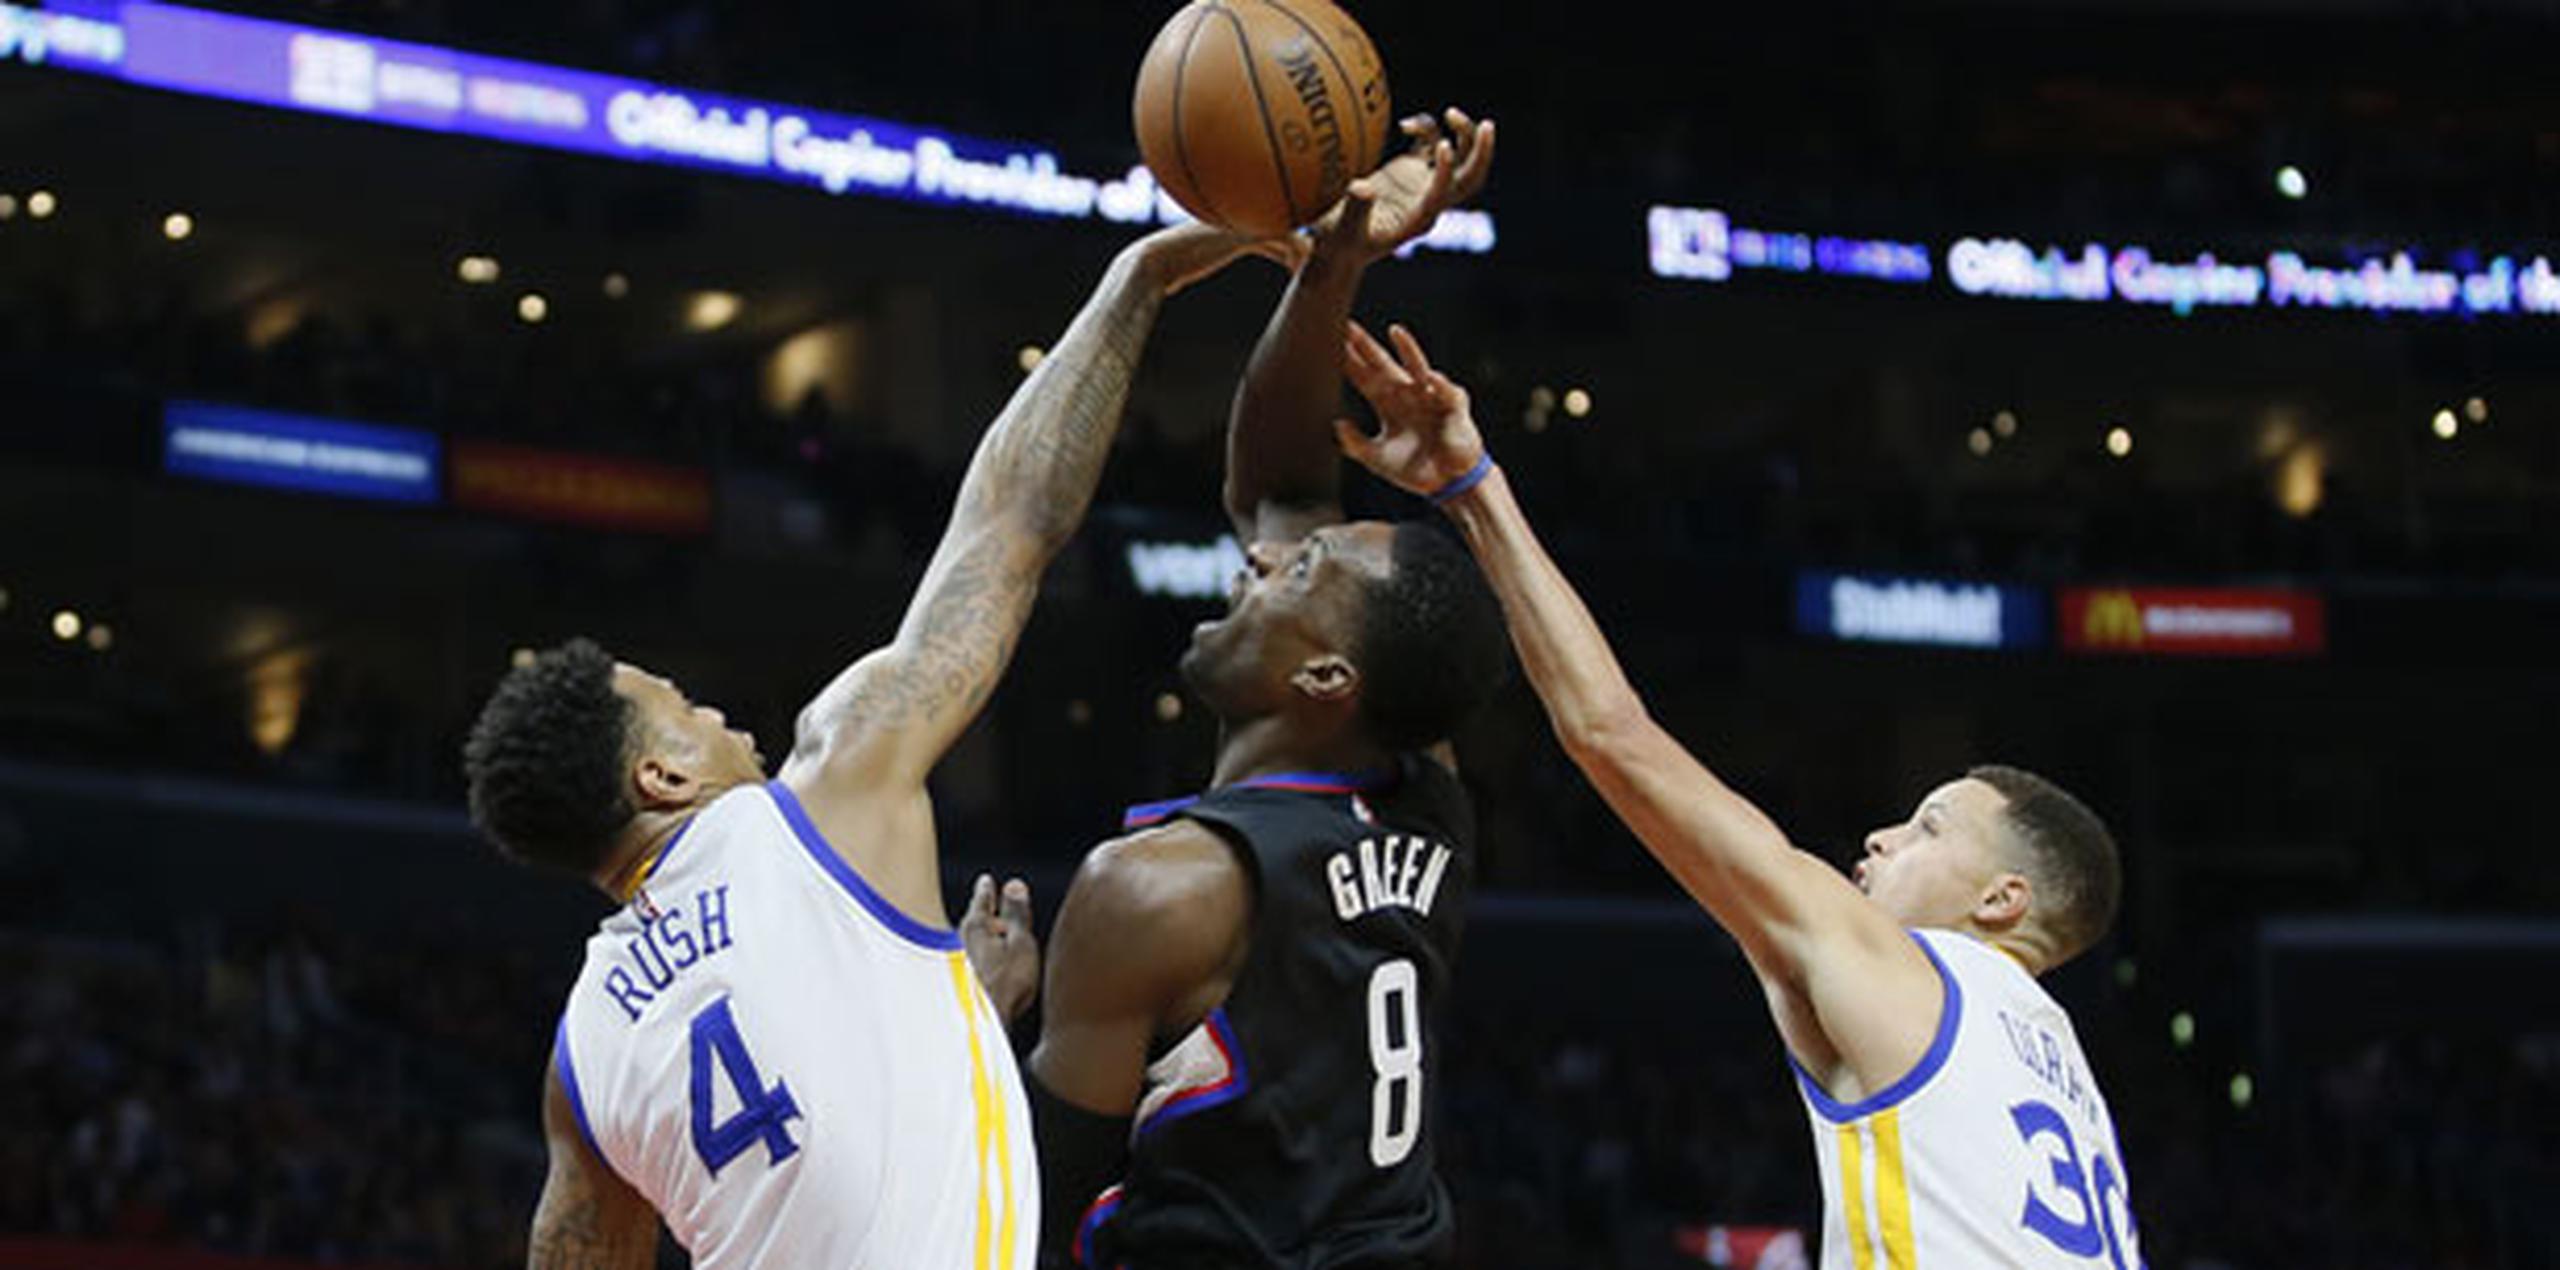 Por los Warriors, Kyle Thompson terminó con 32 puntos y Stephen Curry con 22, mientras que Draymond Green tuvo su undécimo triple doble de la temporada, con 18 puntos, 11 rebotes y 10 asistencias. (AP Photo/Danny Moloshok)
